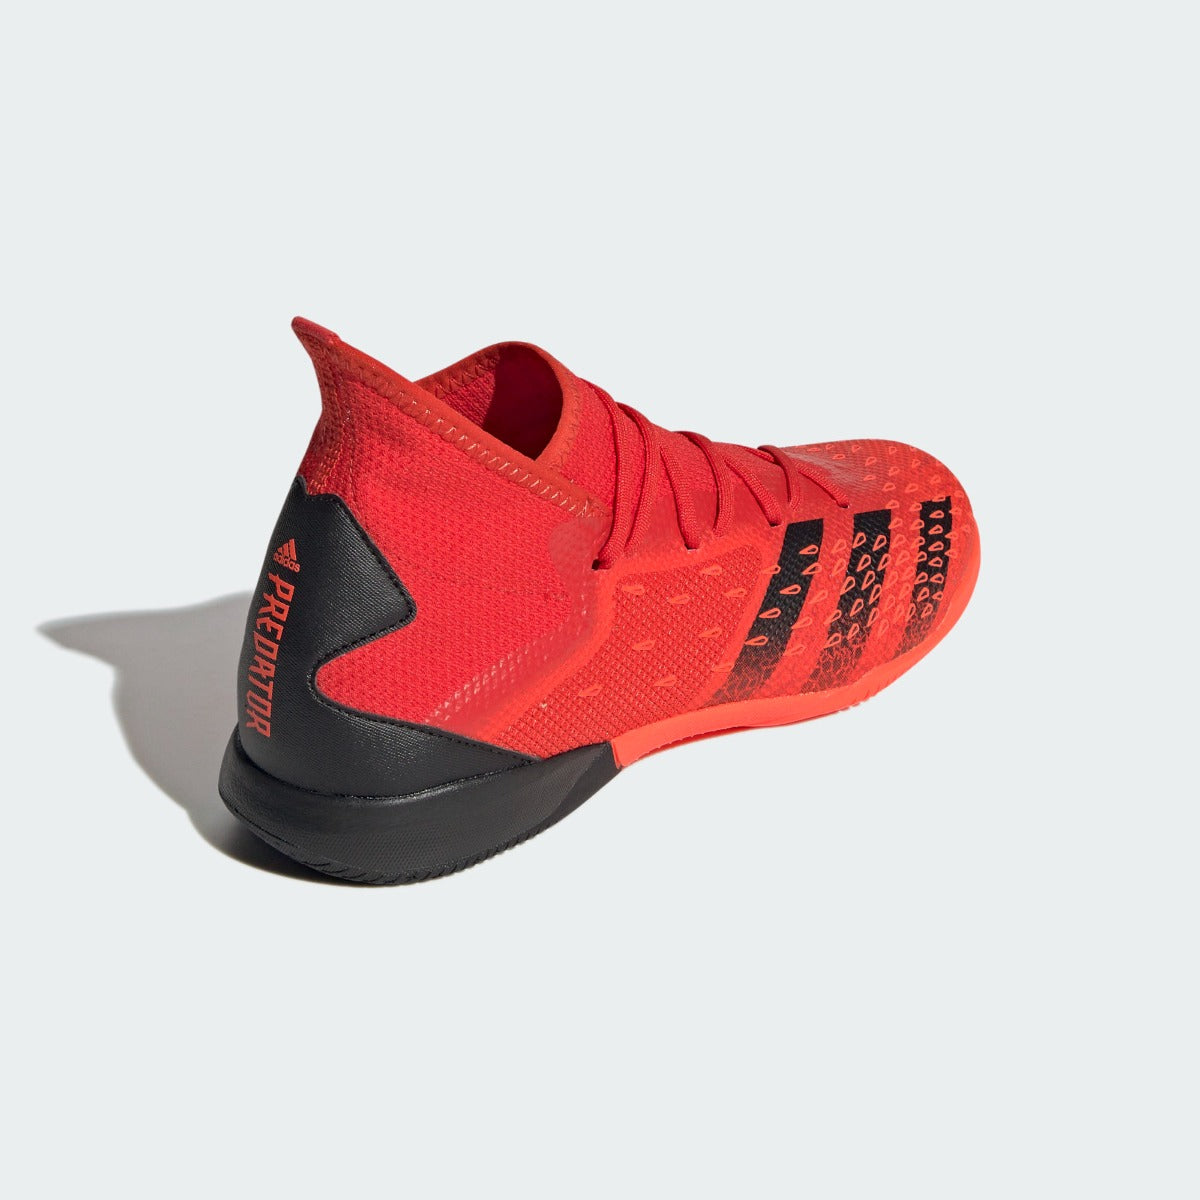 Adidas Predator Freak .3 IN - Red-Black (Diagonal 2)